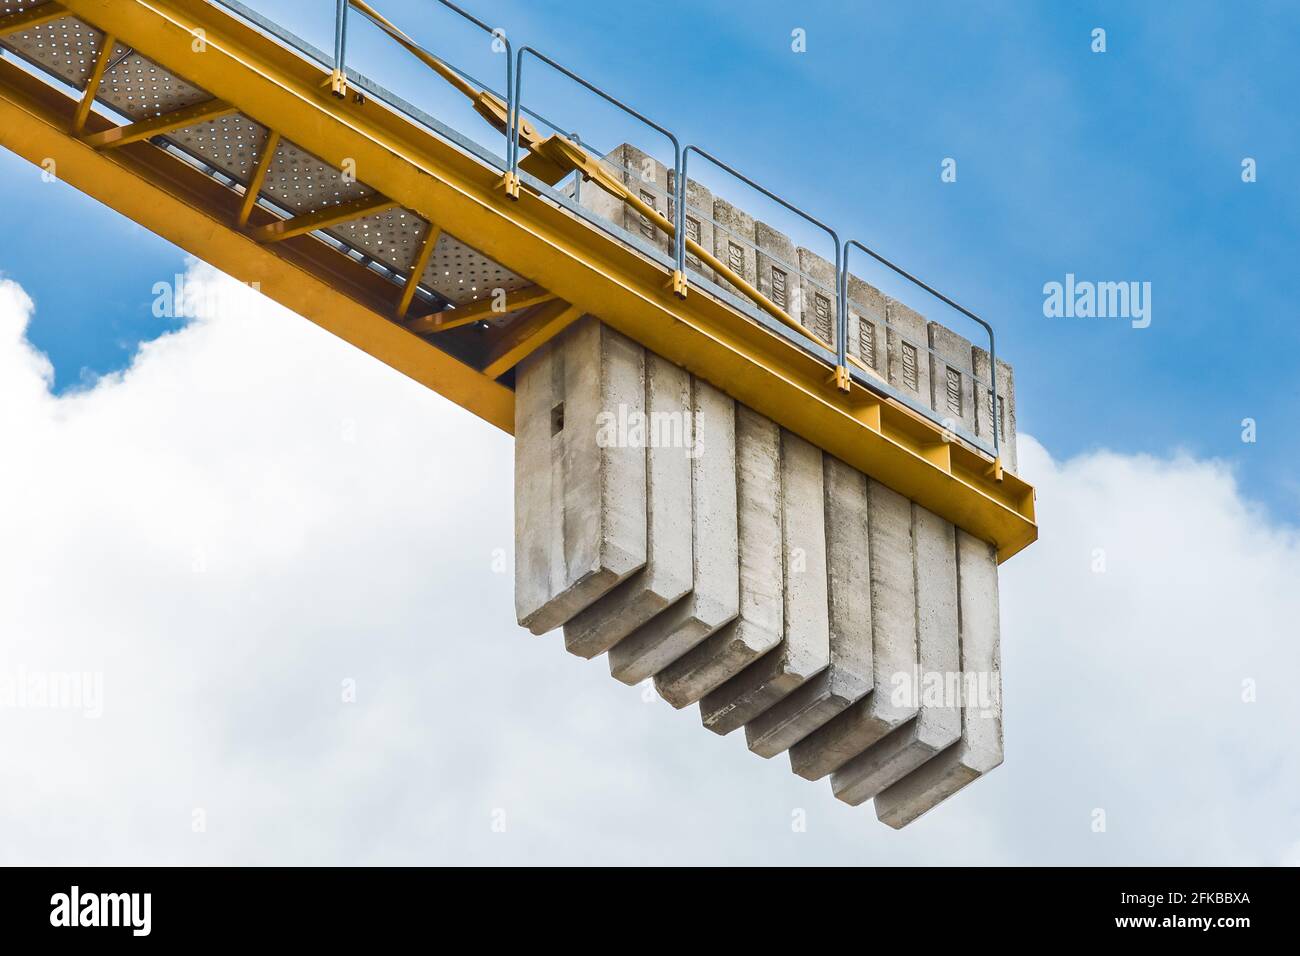 Bielorussia, Minsk - 28 maggio 2020: Un contrappeso di blocchi di cemento sulla coda di una gru industriale di costruzione torre contro un cielo blu. Primo piano. Foto Stock